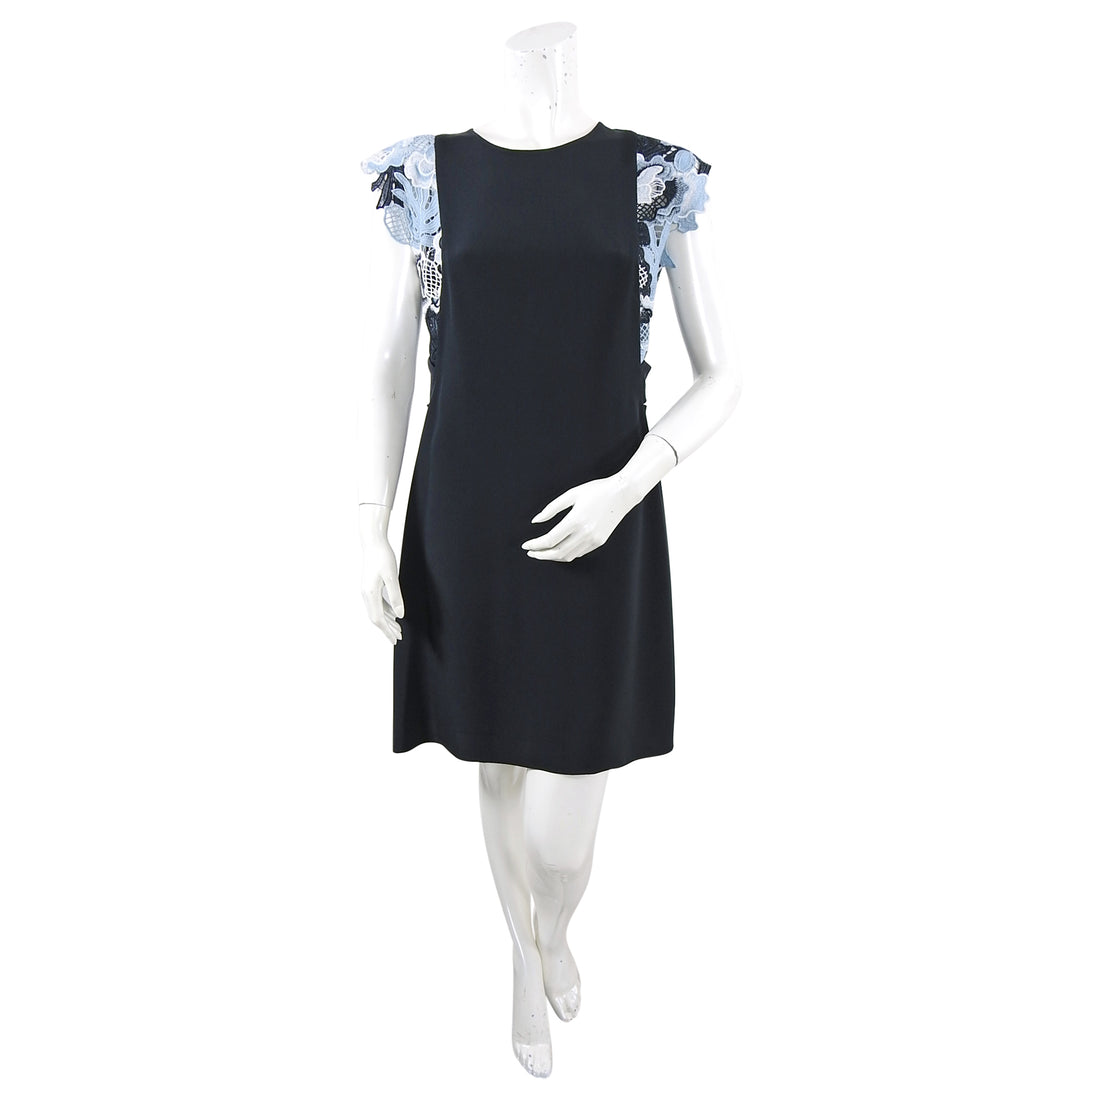 Phillip Lim Black Short Dress with Blue Guipure Lace Trim - M